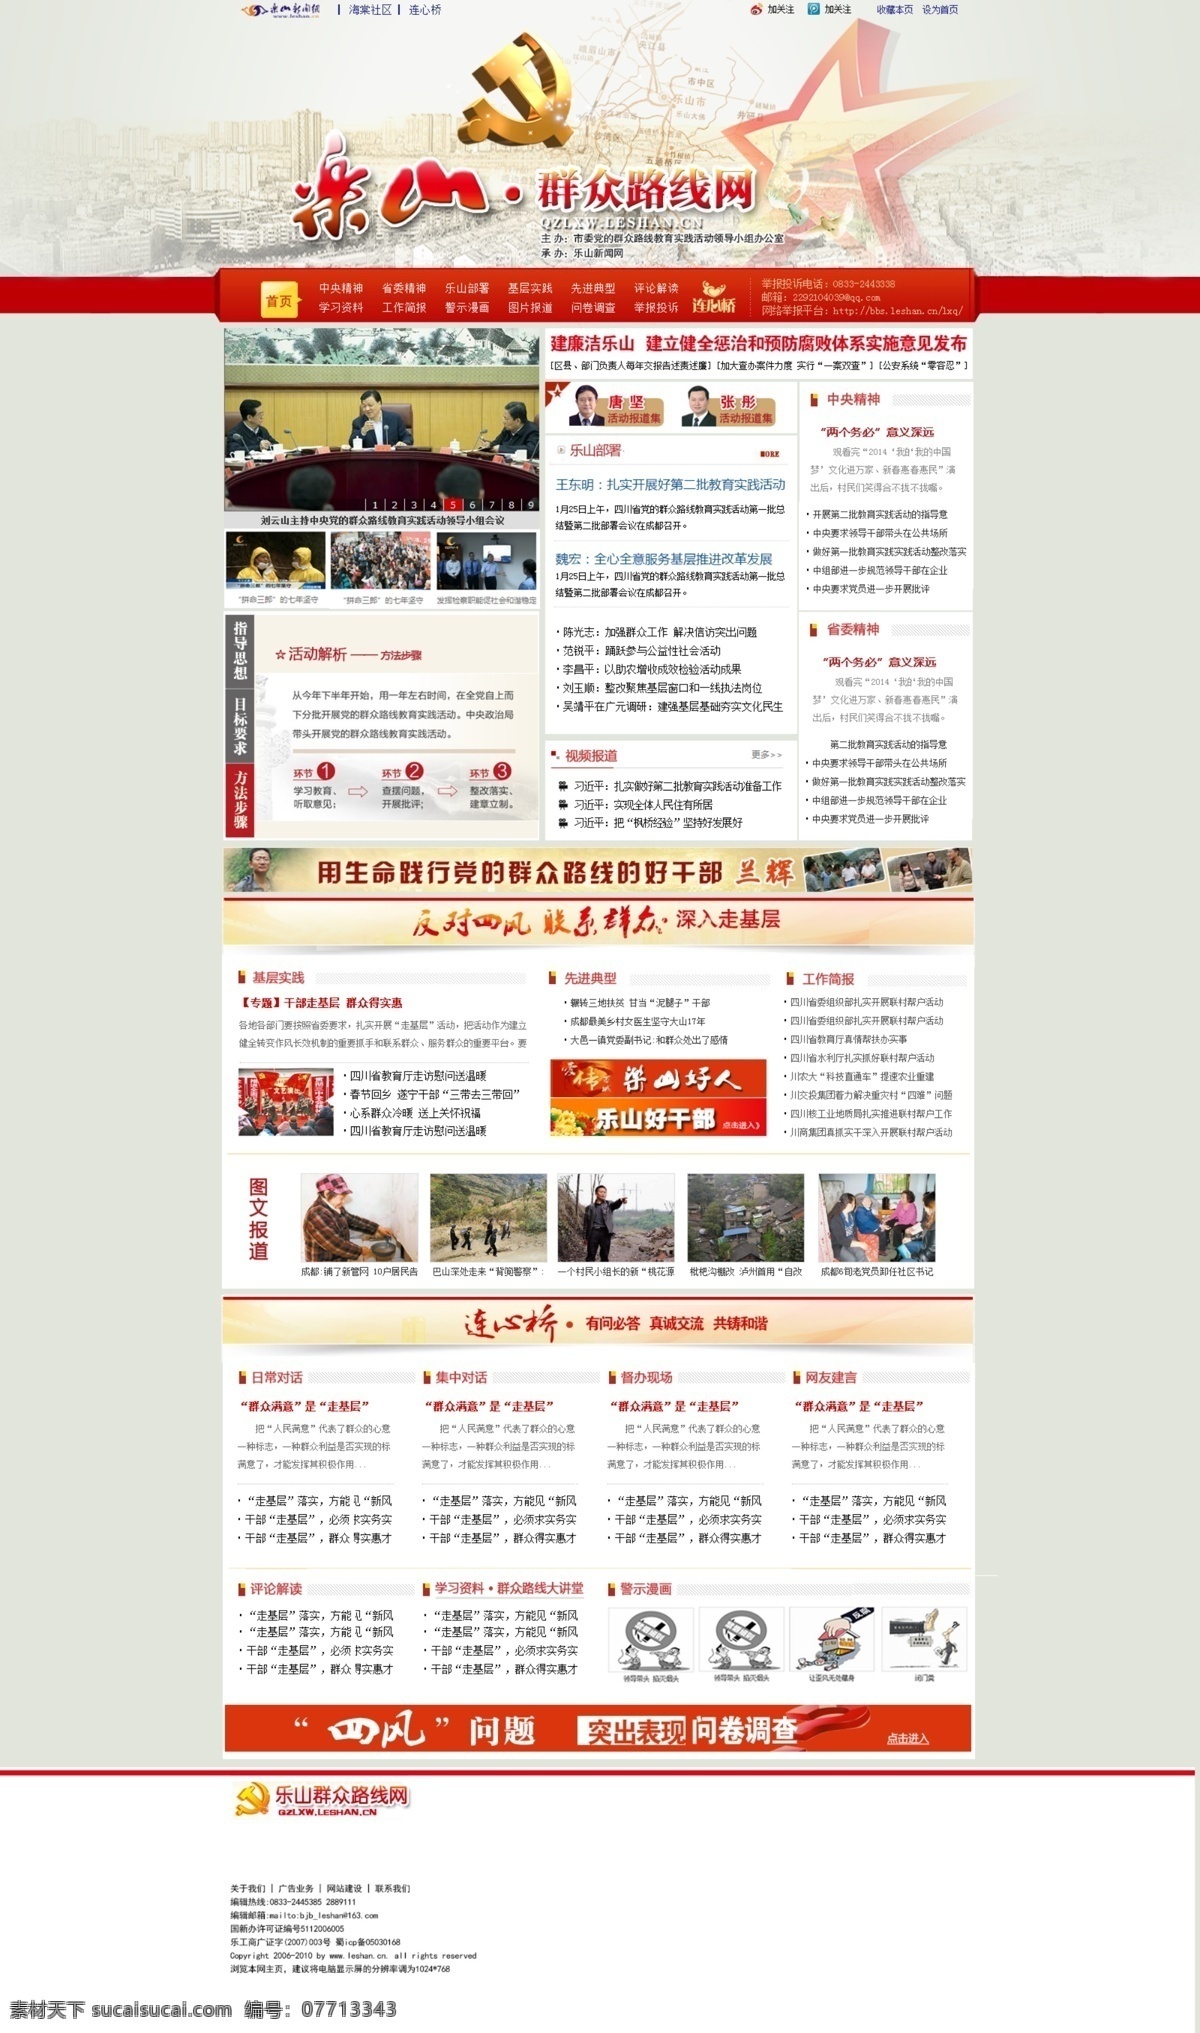 党 红色 会议 两会 路线 群众 网页模板 源文件 网 模板下载 群众路线网 乐山 政治 新闻网 中文模板 网页素材